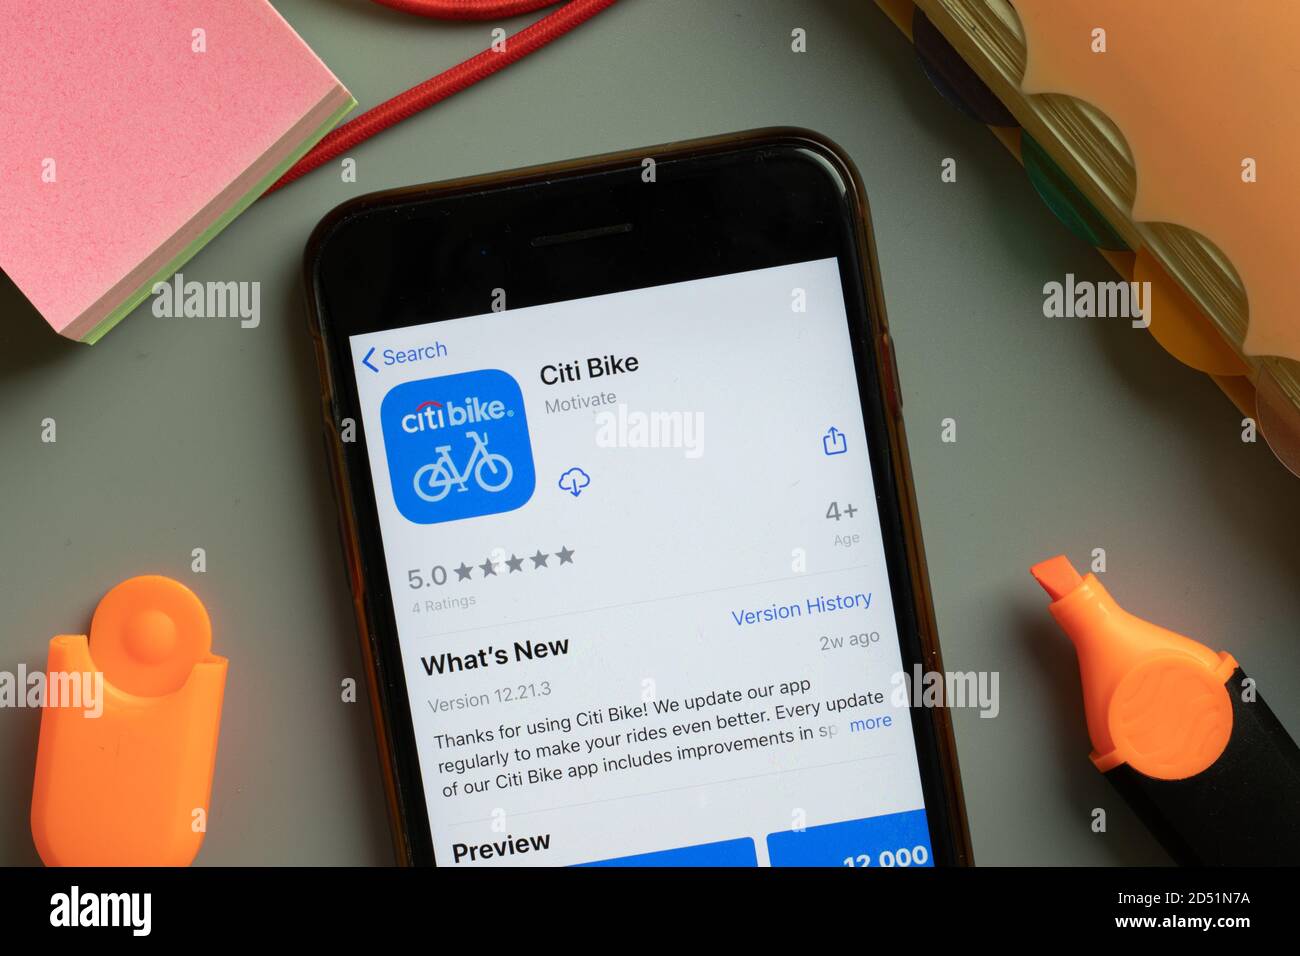 New York, États-Unis - 29 septembre 2020 : logo de l'application mobile Citi Bike sur l'écran du téléphone, illustration éditoriale Banque D'Images